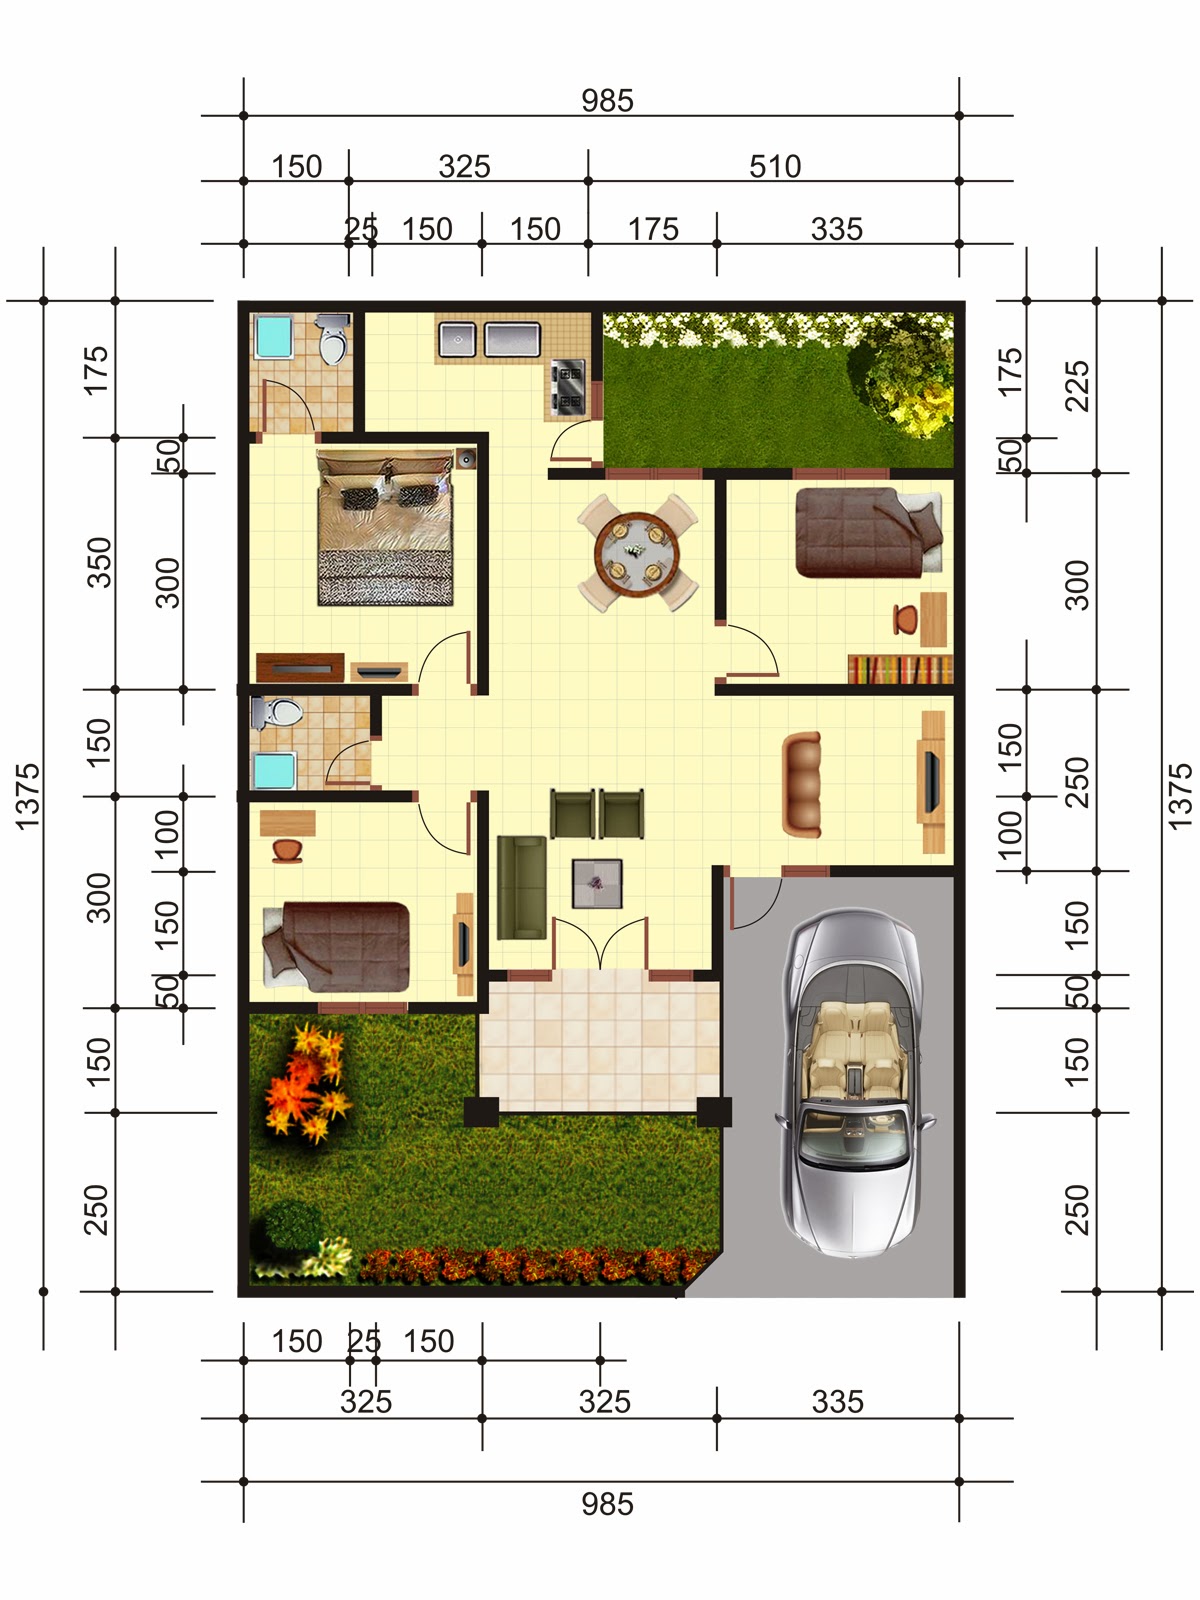 Contoh Gambar Denah Rumah Minimalis Terbaru  Info Tercepatku